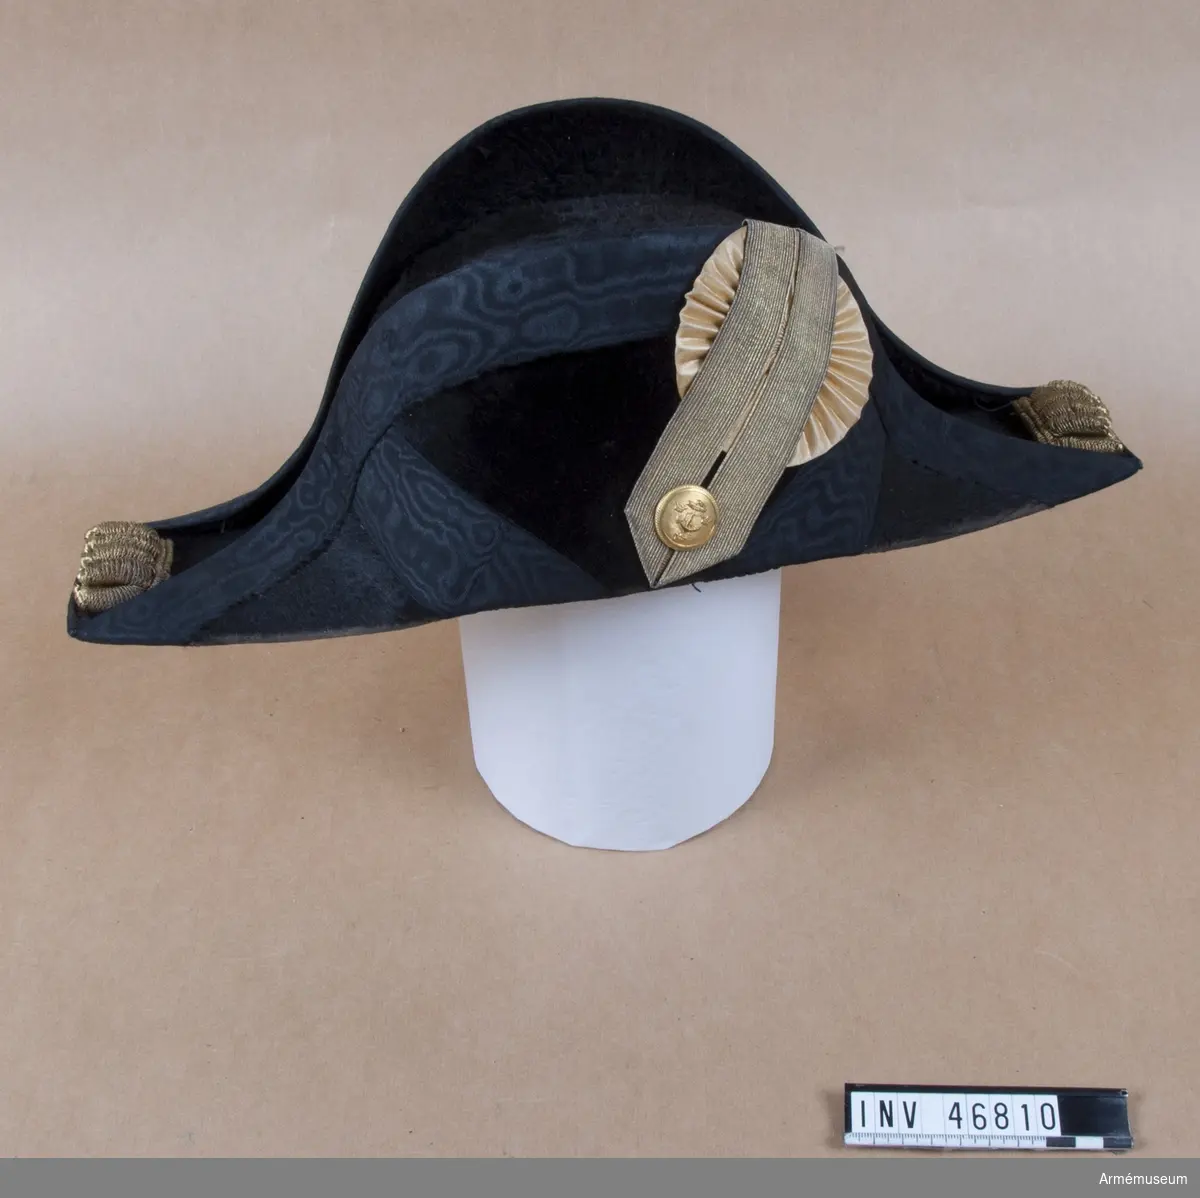 Grupp C I.
Trekantig hatt med samhörande träfodral.
Ur uniform för officer/löjtnant i kungliga flottan. Består av  frack, väst, trekantig hatt, sabelkoppel.